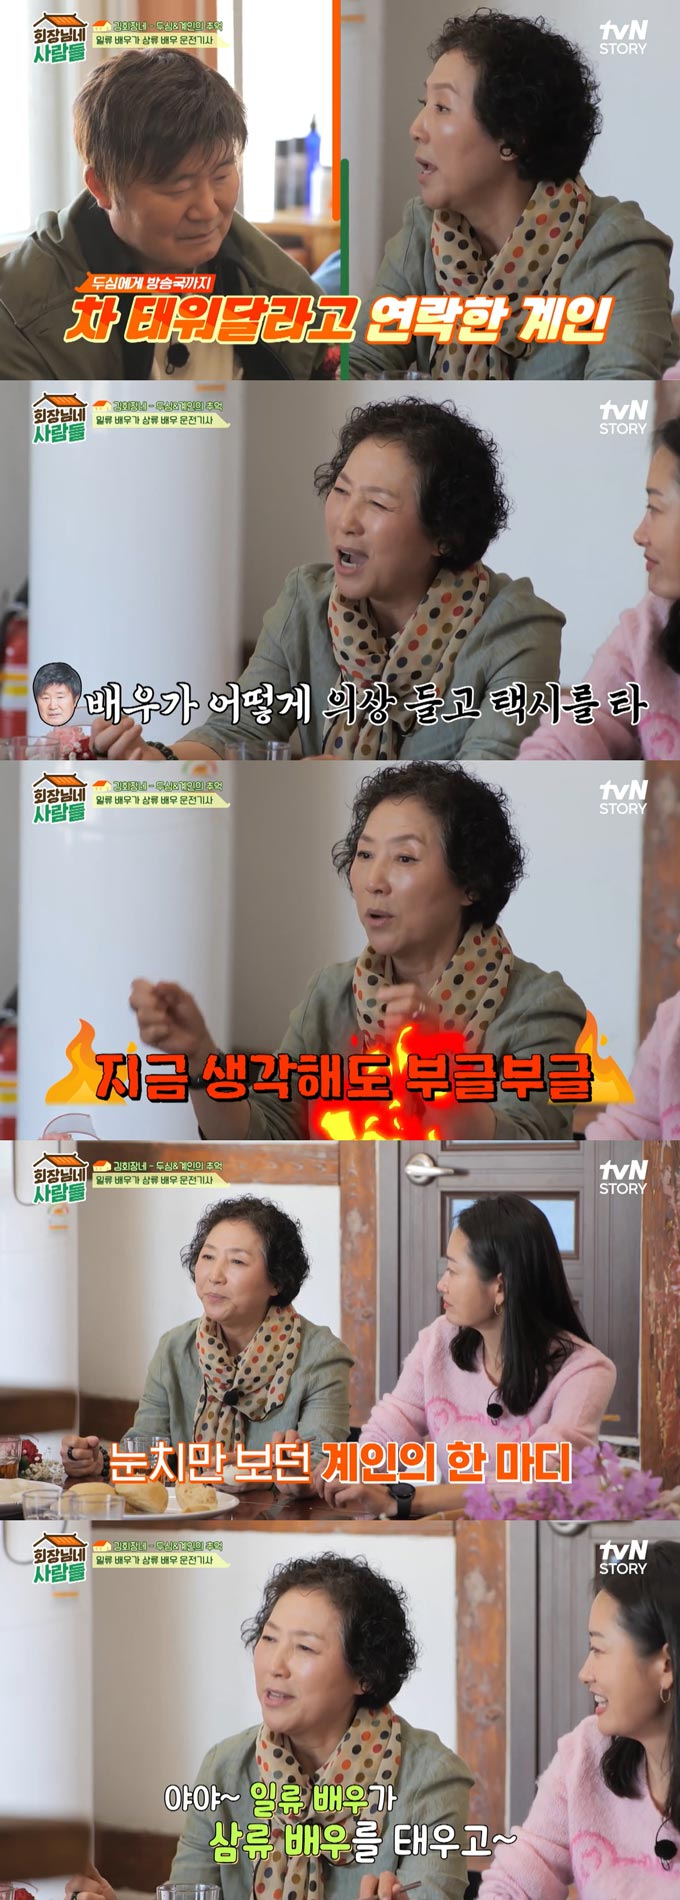 /사진=tvN STORY '회장님네 사람들' 선공개 영상